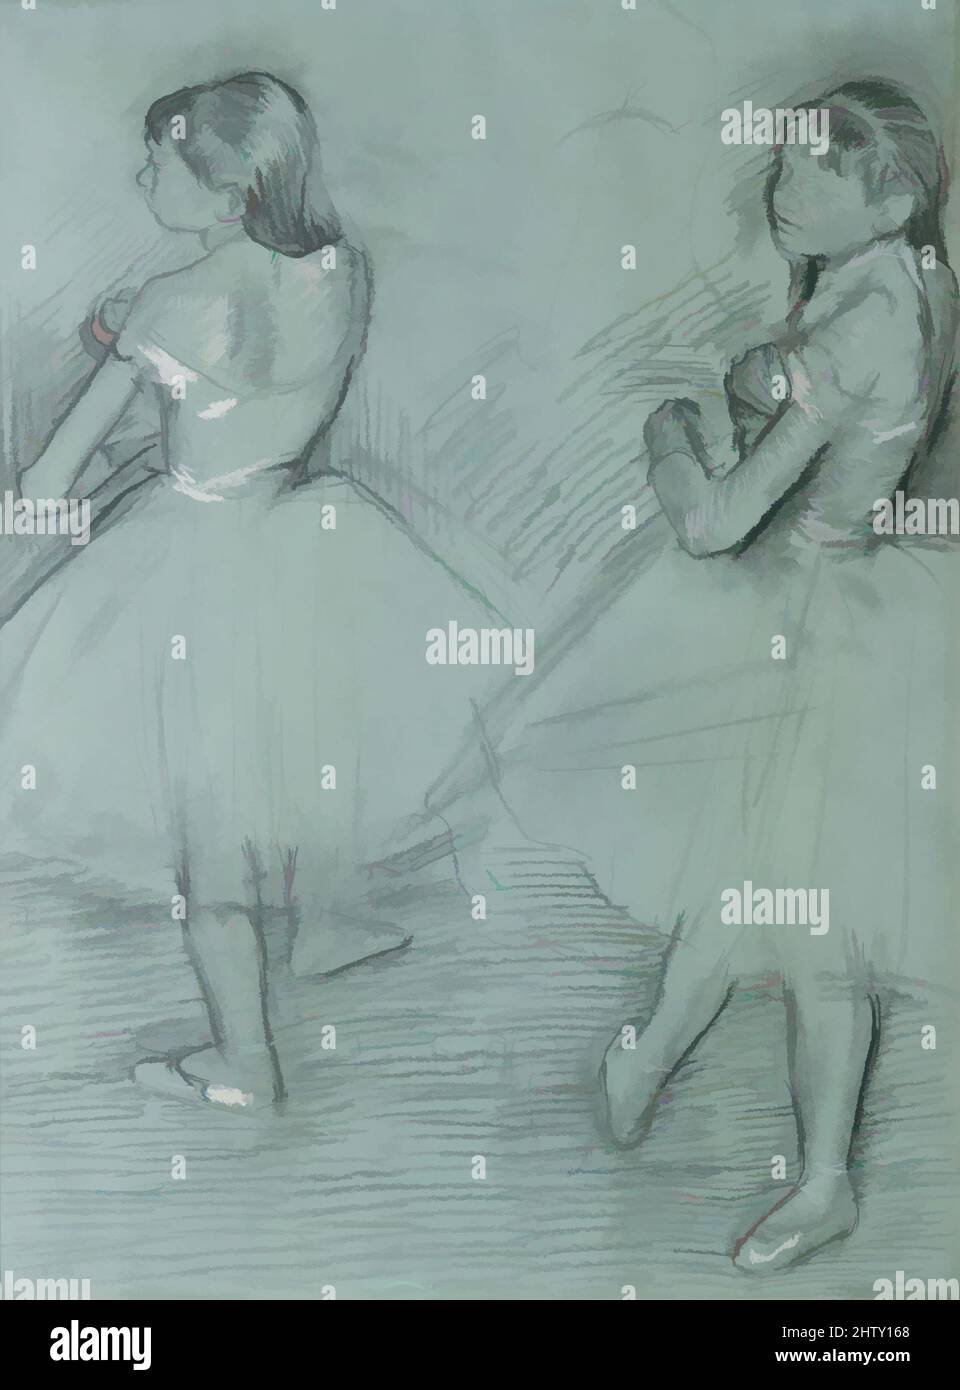 Arte ispirata da due ballerini, ca. 1879, carbone e gesso bianco su carta bianca rivestita in commercio verde, 25 1/8 x 19 1/4 poll. (63,8 x 48,9 cm), disegni, Edgar Degas (francese, Parigi 1834–1917 Parigi), Marie van Goethem, Chi ha posato per la scultura di Degas il ballerino di quattordici anni, opere classiche modernizzate da Artotop con un tuffo di modernità. Forme, colore e valore, impatto visivo accattivante sulle emozioni artistiche attraverso la libertà delle opere d'arte in modo contemporaneo. Un messaggio senza tempo che persegue una nuova direzione selvaggiamente creativa. Artisti che si rivolgono al supporto digitale e creano l'NFT Artotop Foto Stock